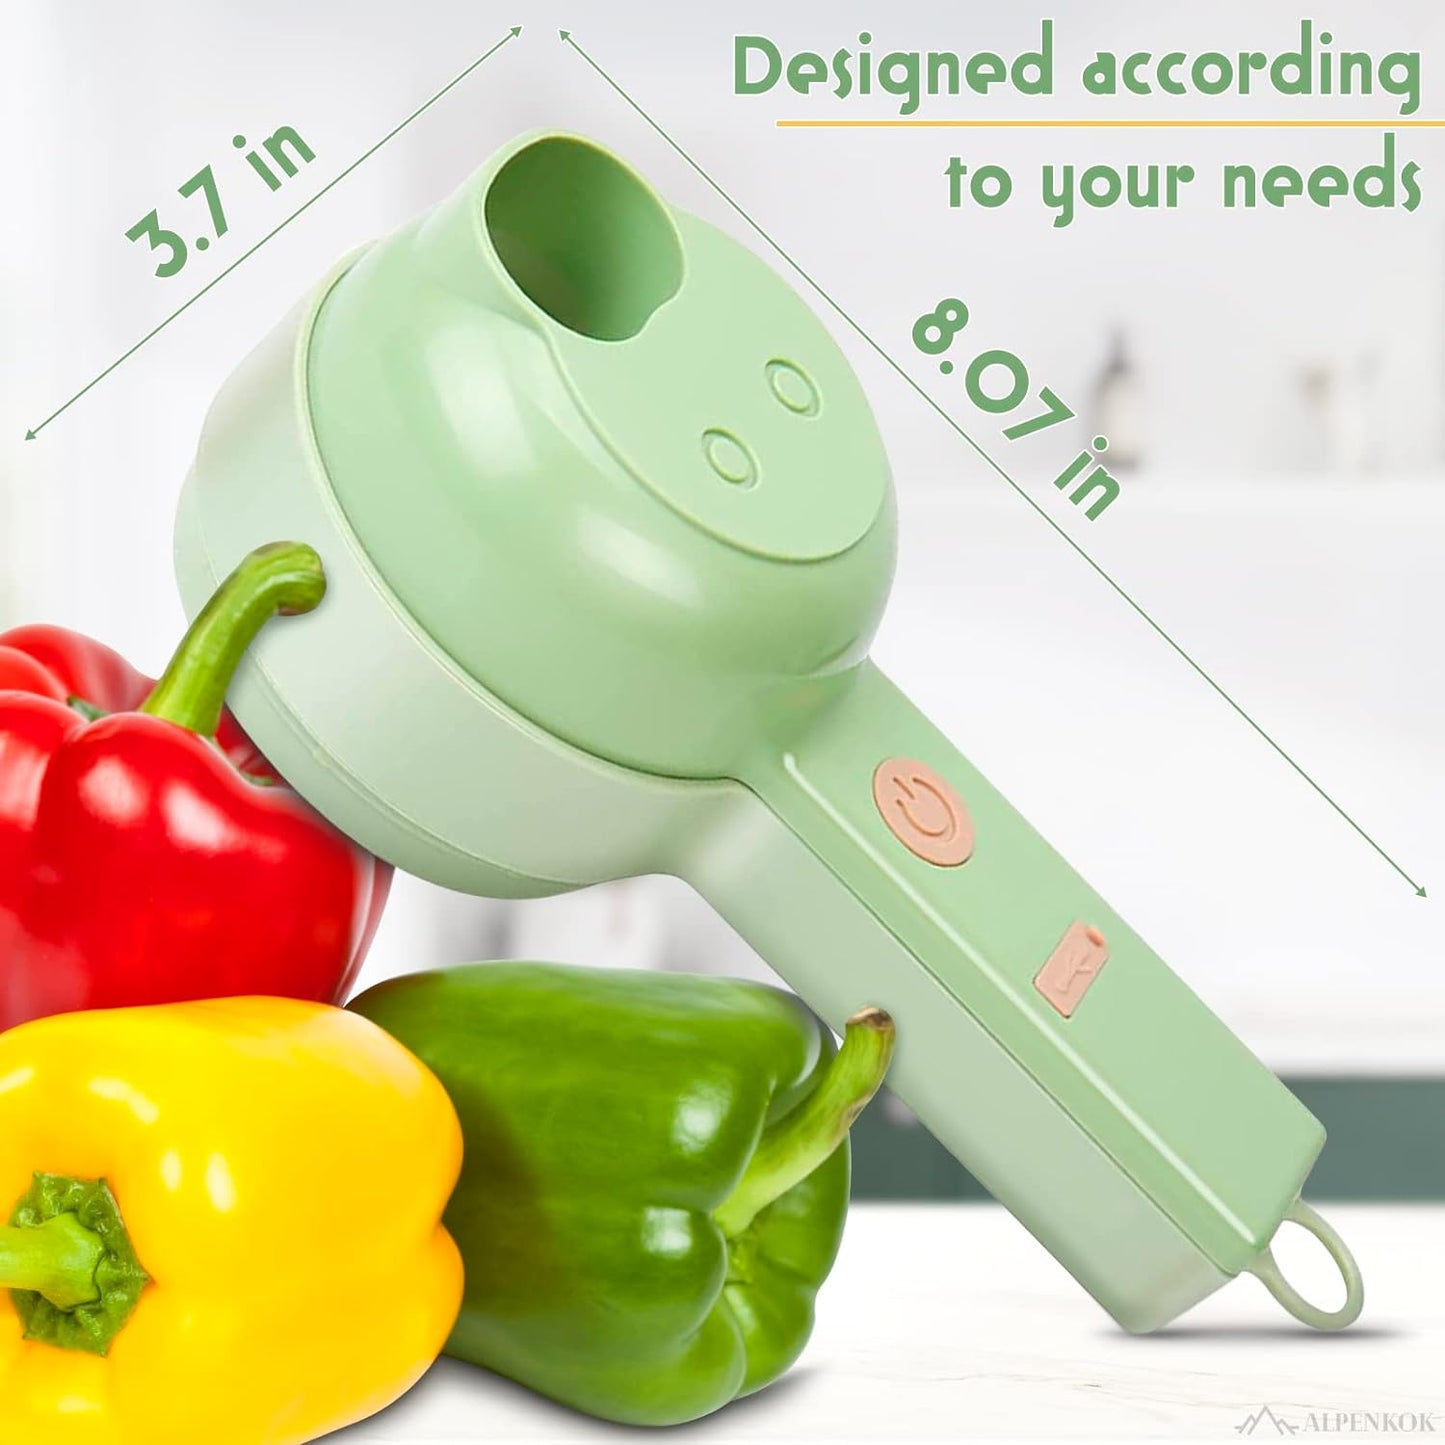 Electric Vegetable Slicer